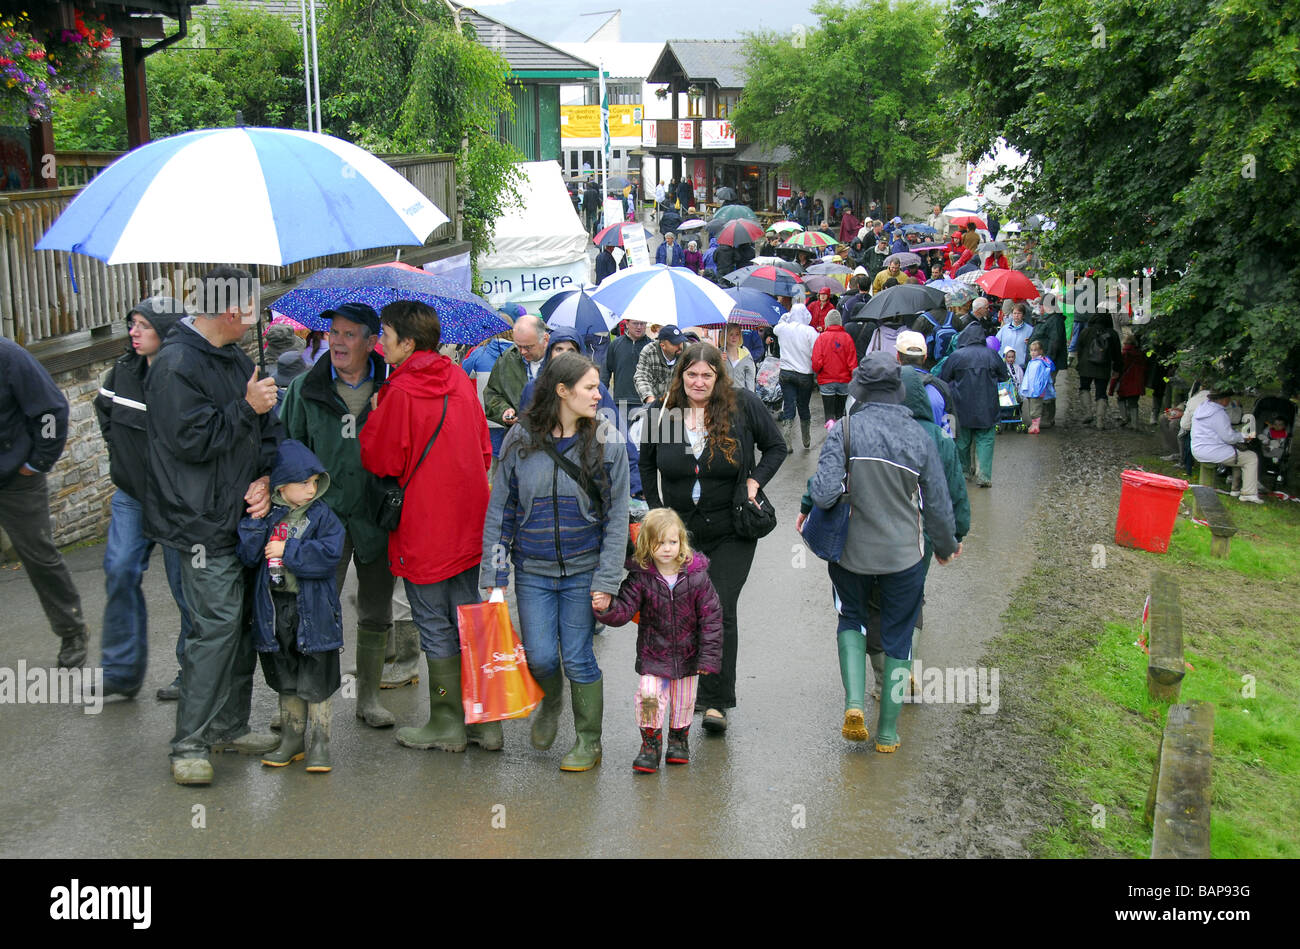 Des foules de gens dans wellies umberellas sous un jour de pluie au Royal Welsh Show agricole Banque D'Images